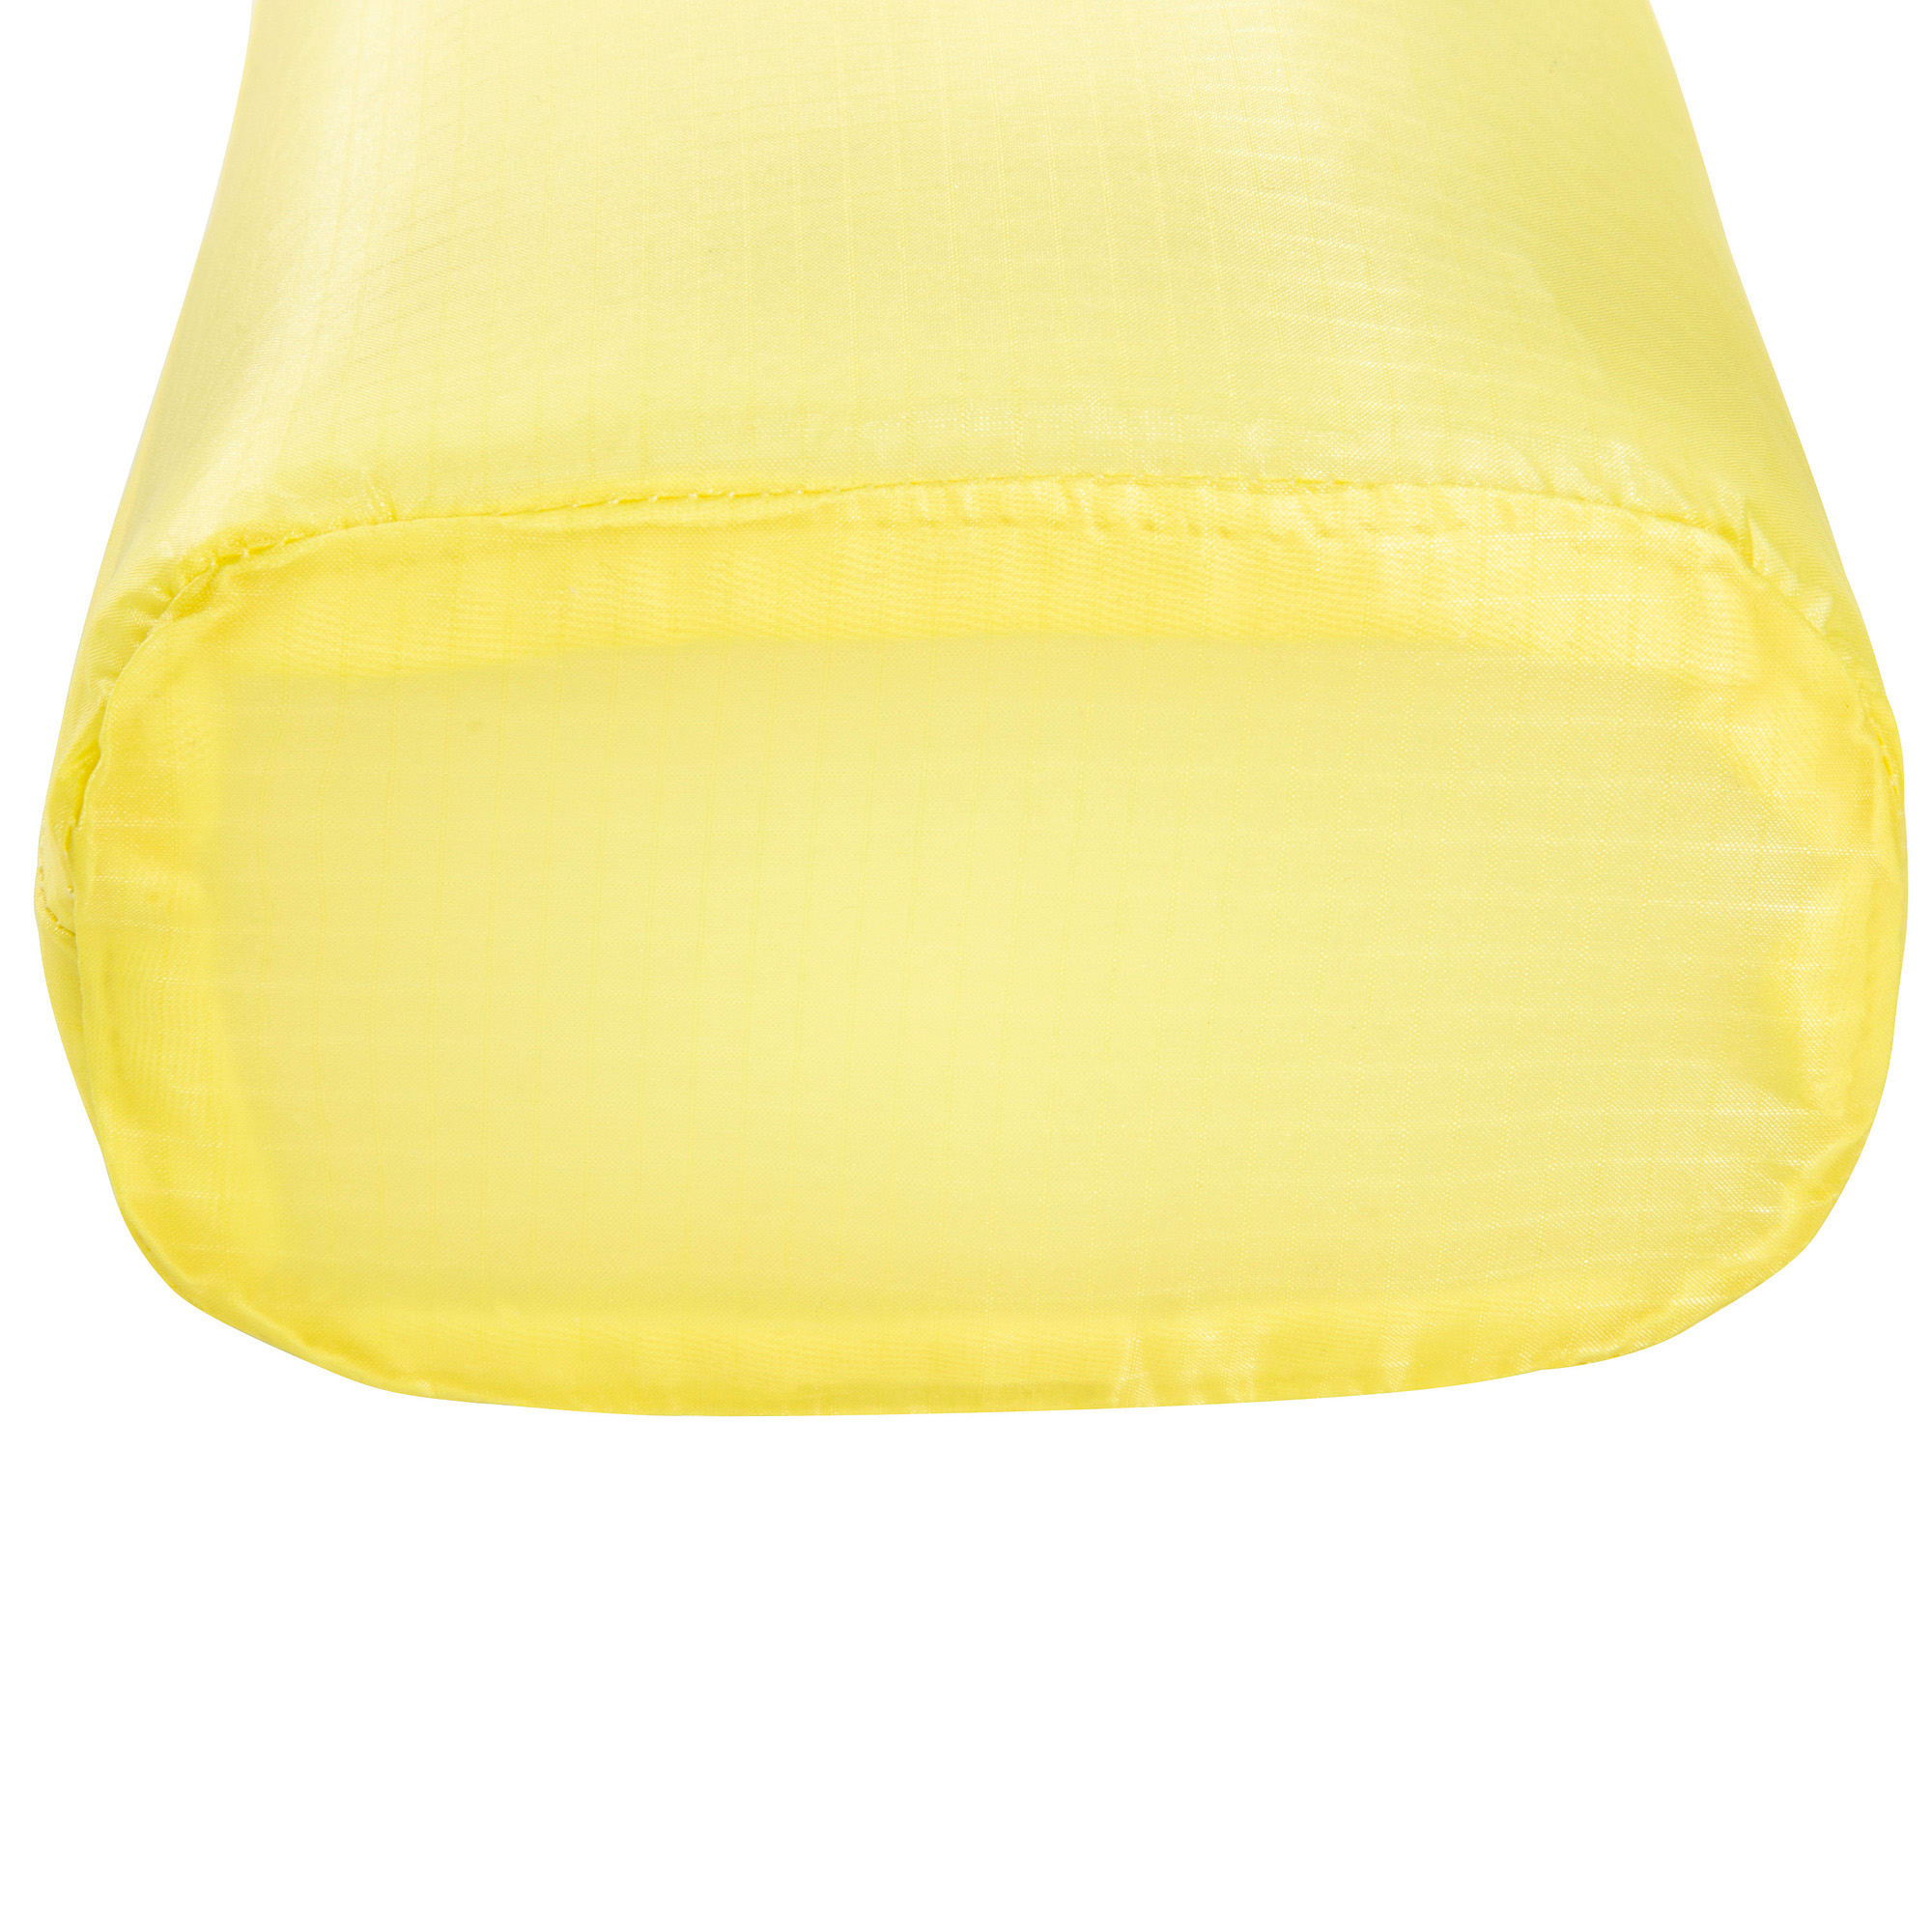 Tatonka SQZY Stuff Bag 2l light yellow gelb Packwürfel & Staubeutel 4013236336474